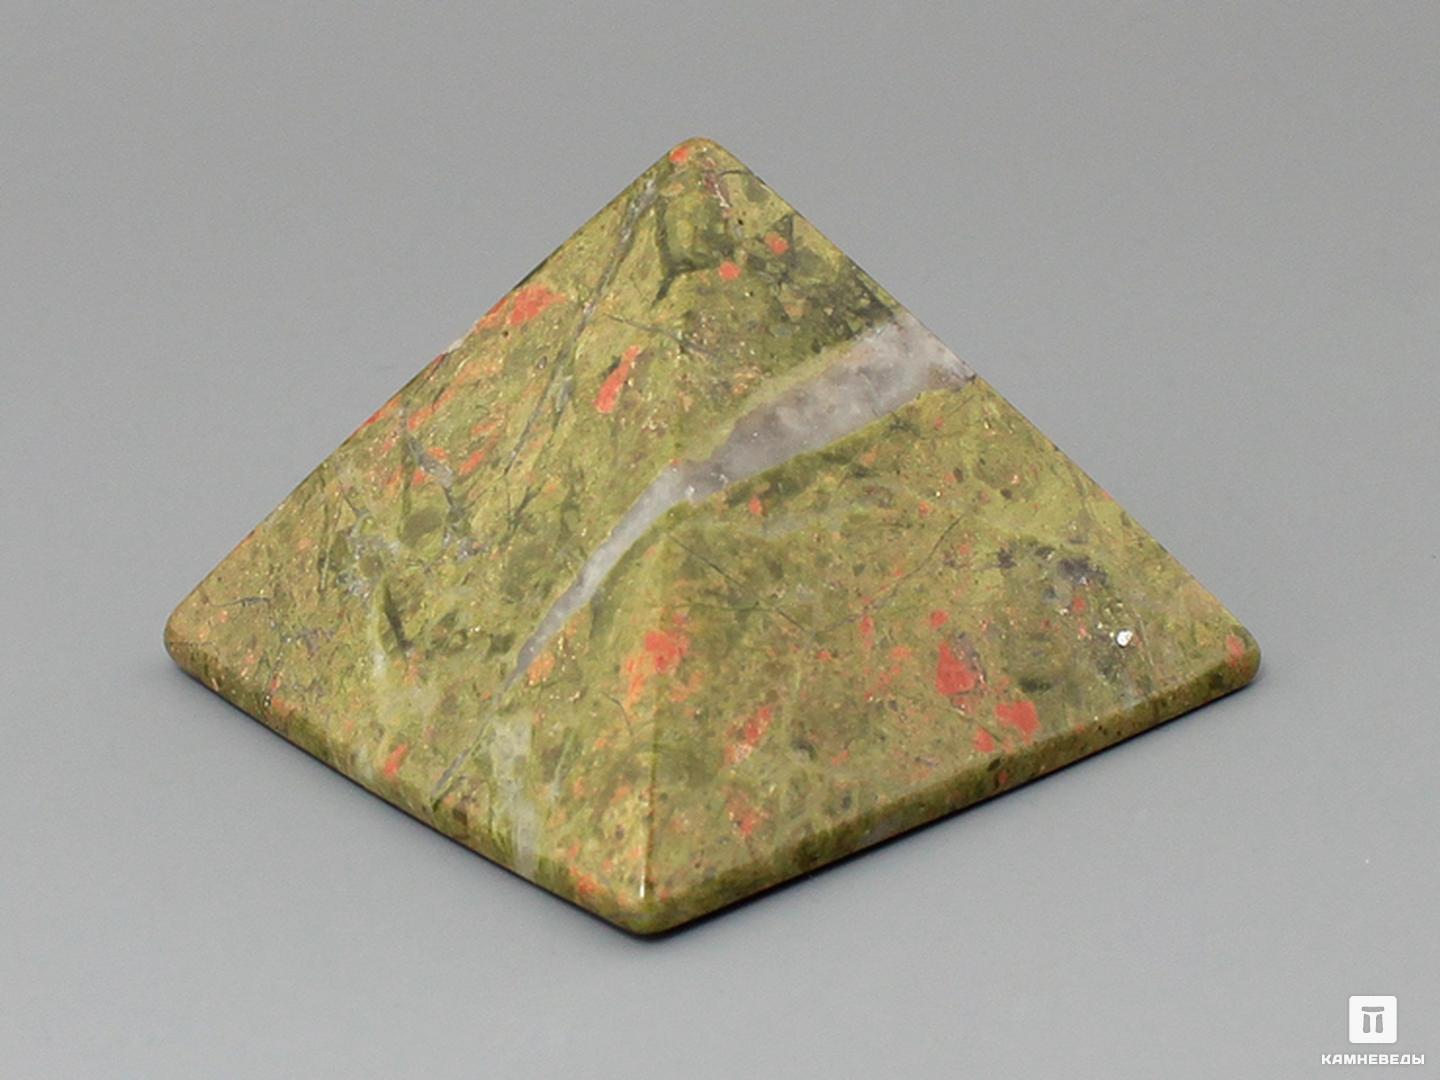 Пирамида из унакита, 5х5 см декор тинги росторопша 150 см цена за штуку микс